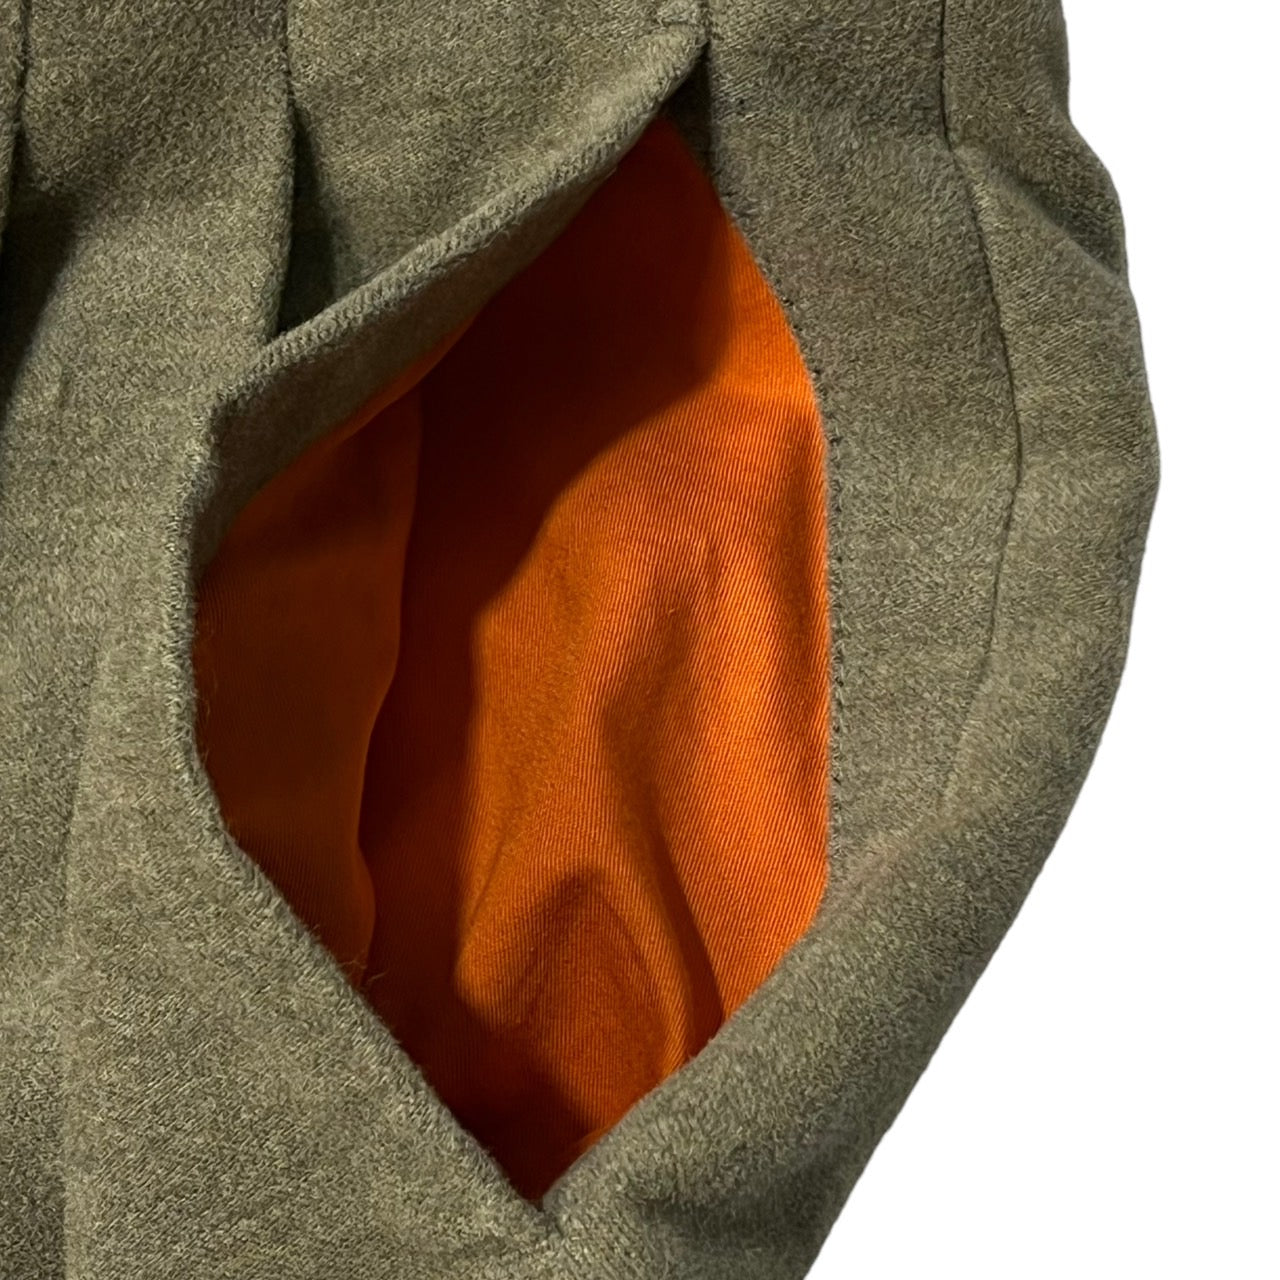 HERMES(エルメス) suede touch trousers/スウェードタッチトラウザー/パンツ/スラックス 52(XLサイズ程度)  ベージュ×オレンジ エルメスジャポンタグ